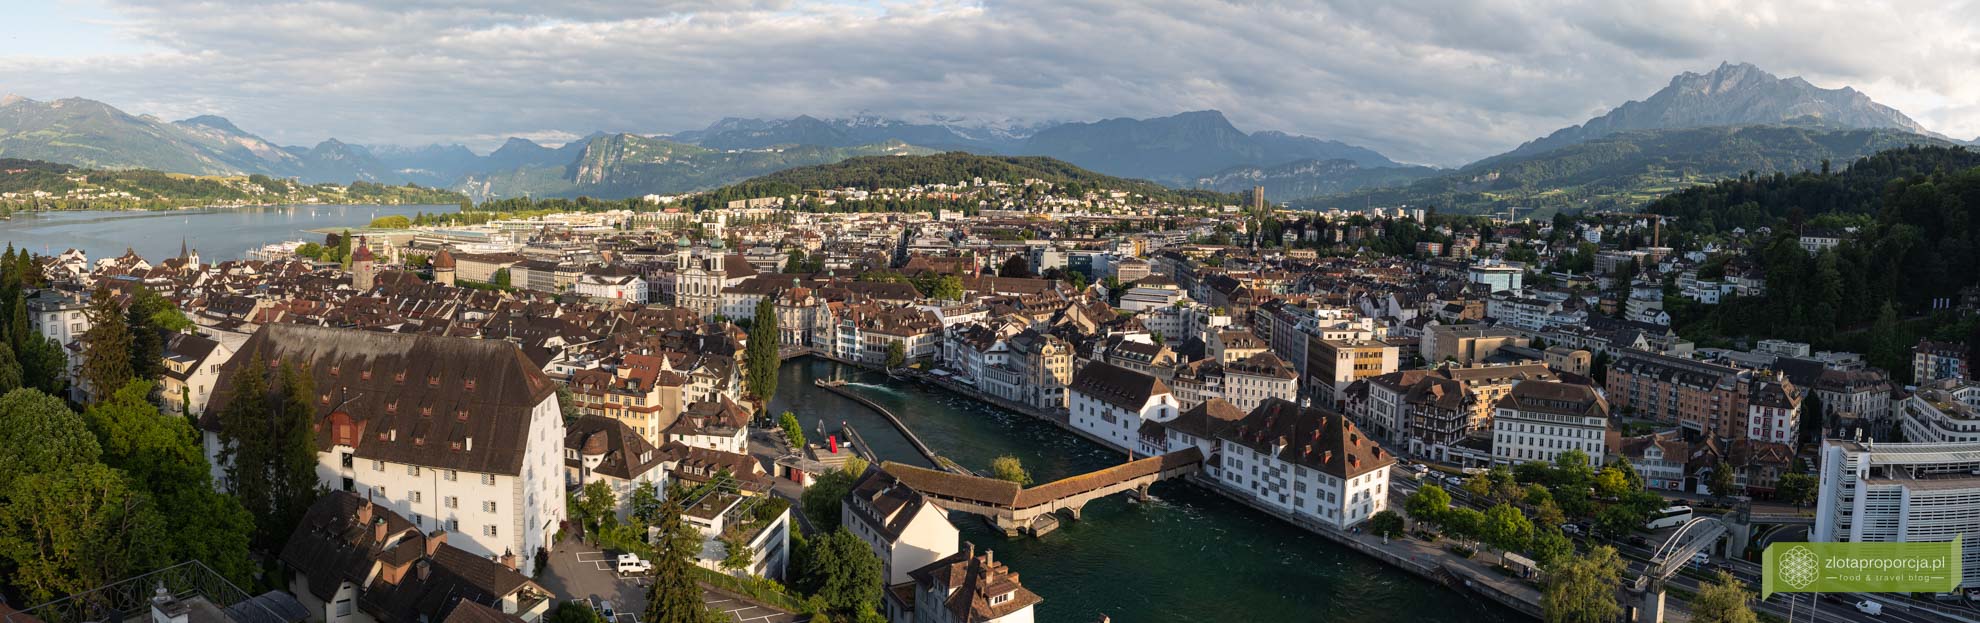 Szwajcaria; atrakcje Szwajcarii; Lucerna; atrakcje Lucerny; co zobaczyć w Lucernie; panorama Lucerny;